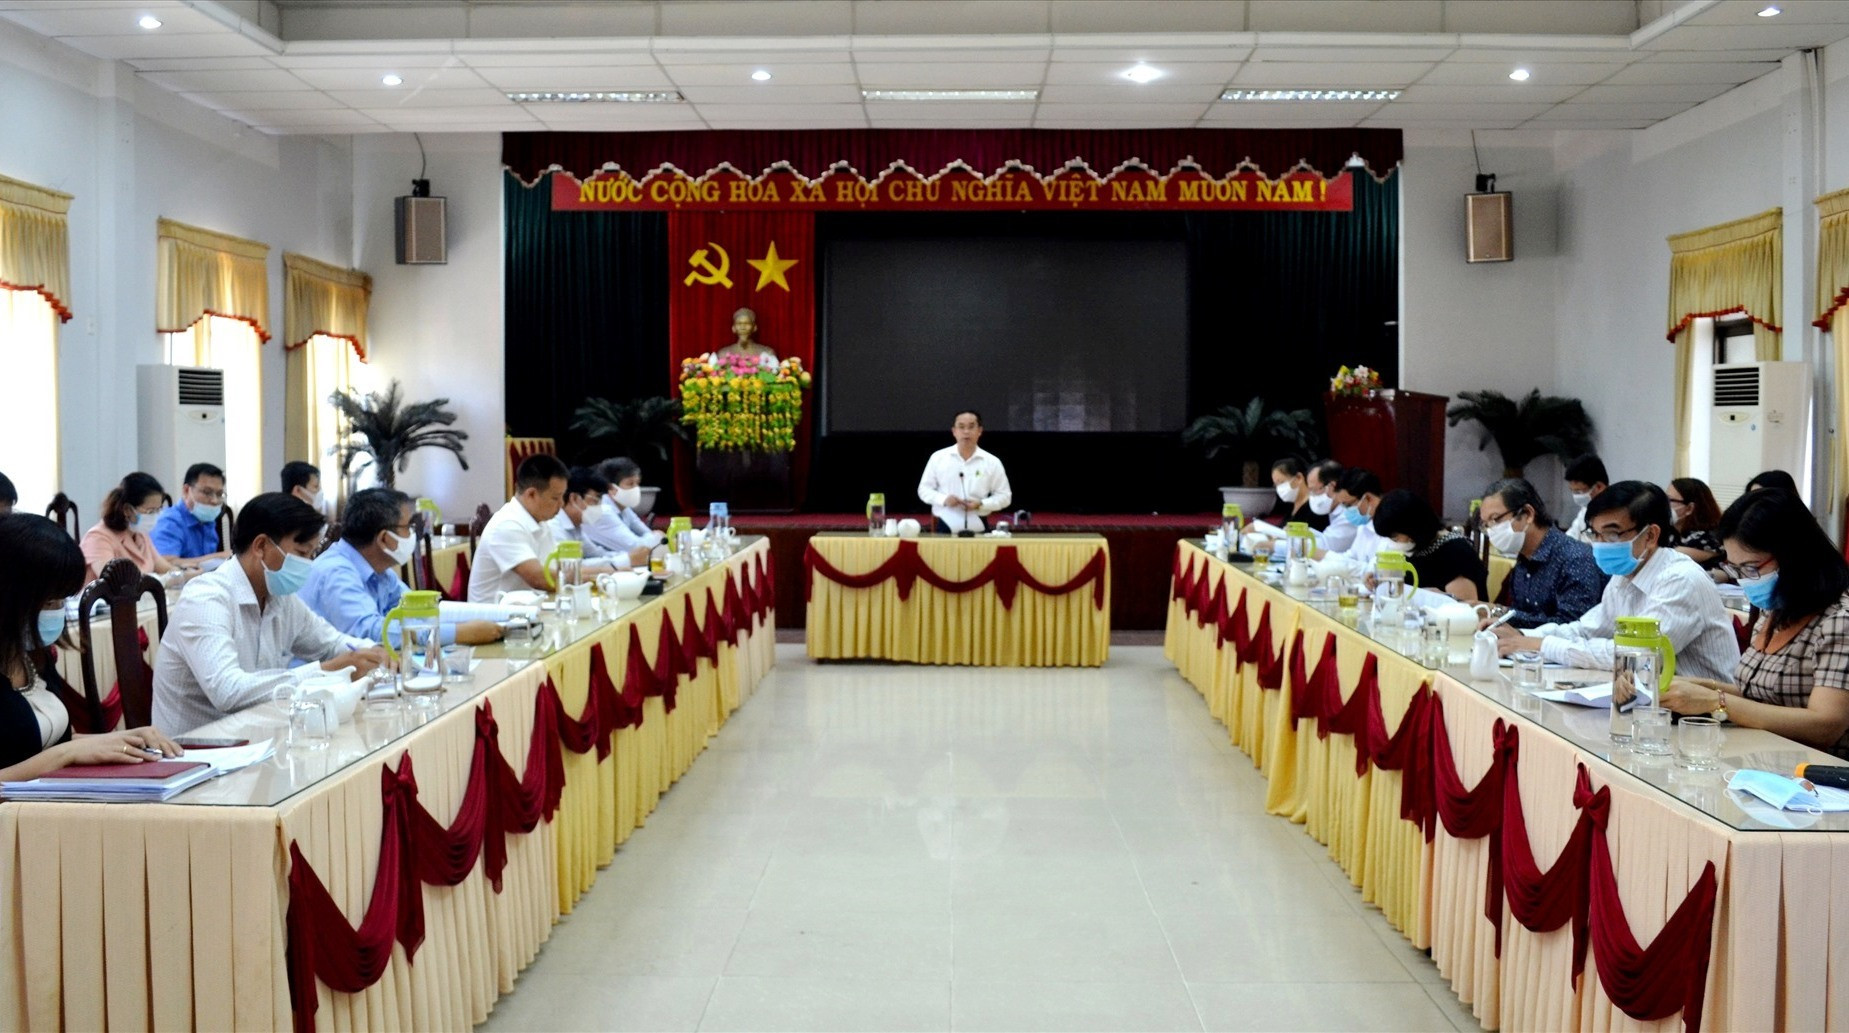 Quang cảnh buổi làm việc của UBD tỉnh với UBND huyện Thăng Bình. Ảnh: Q.VIỆT